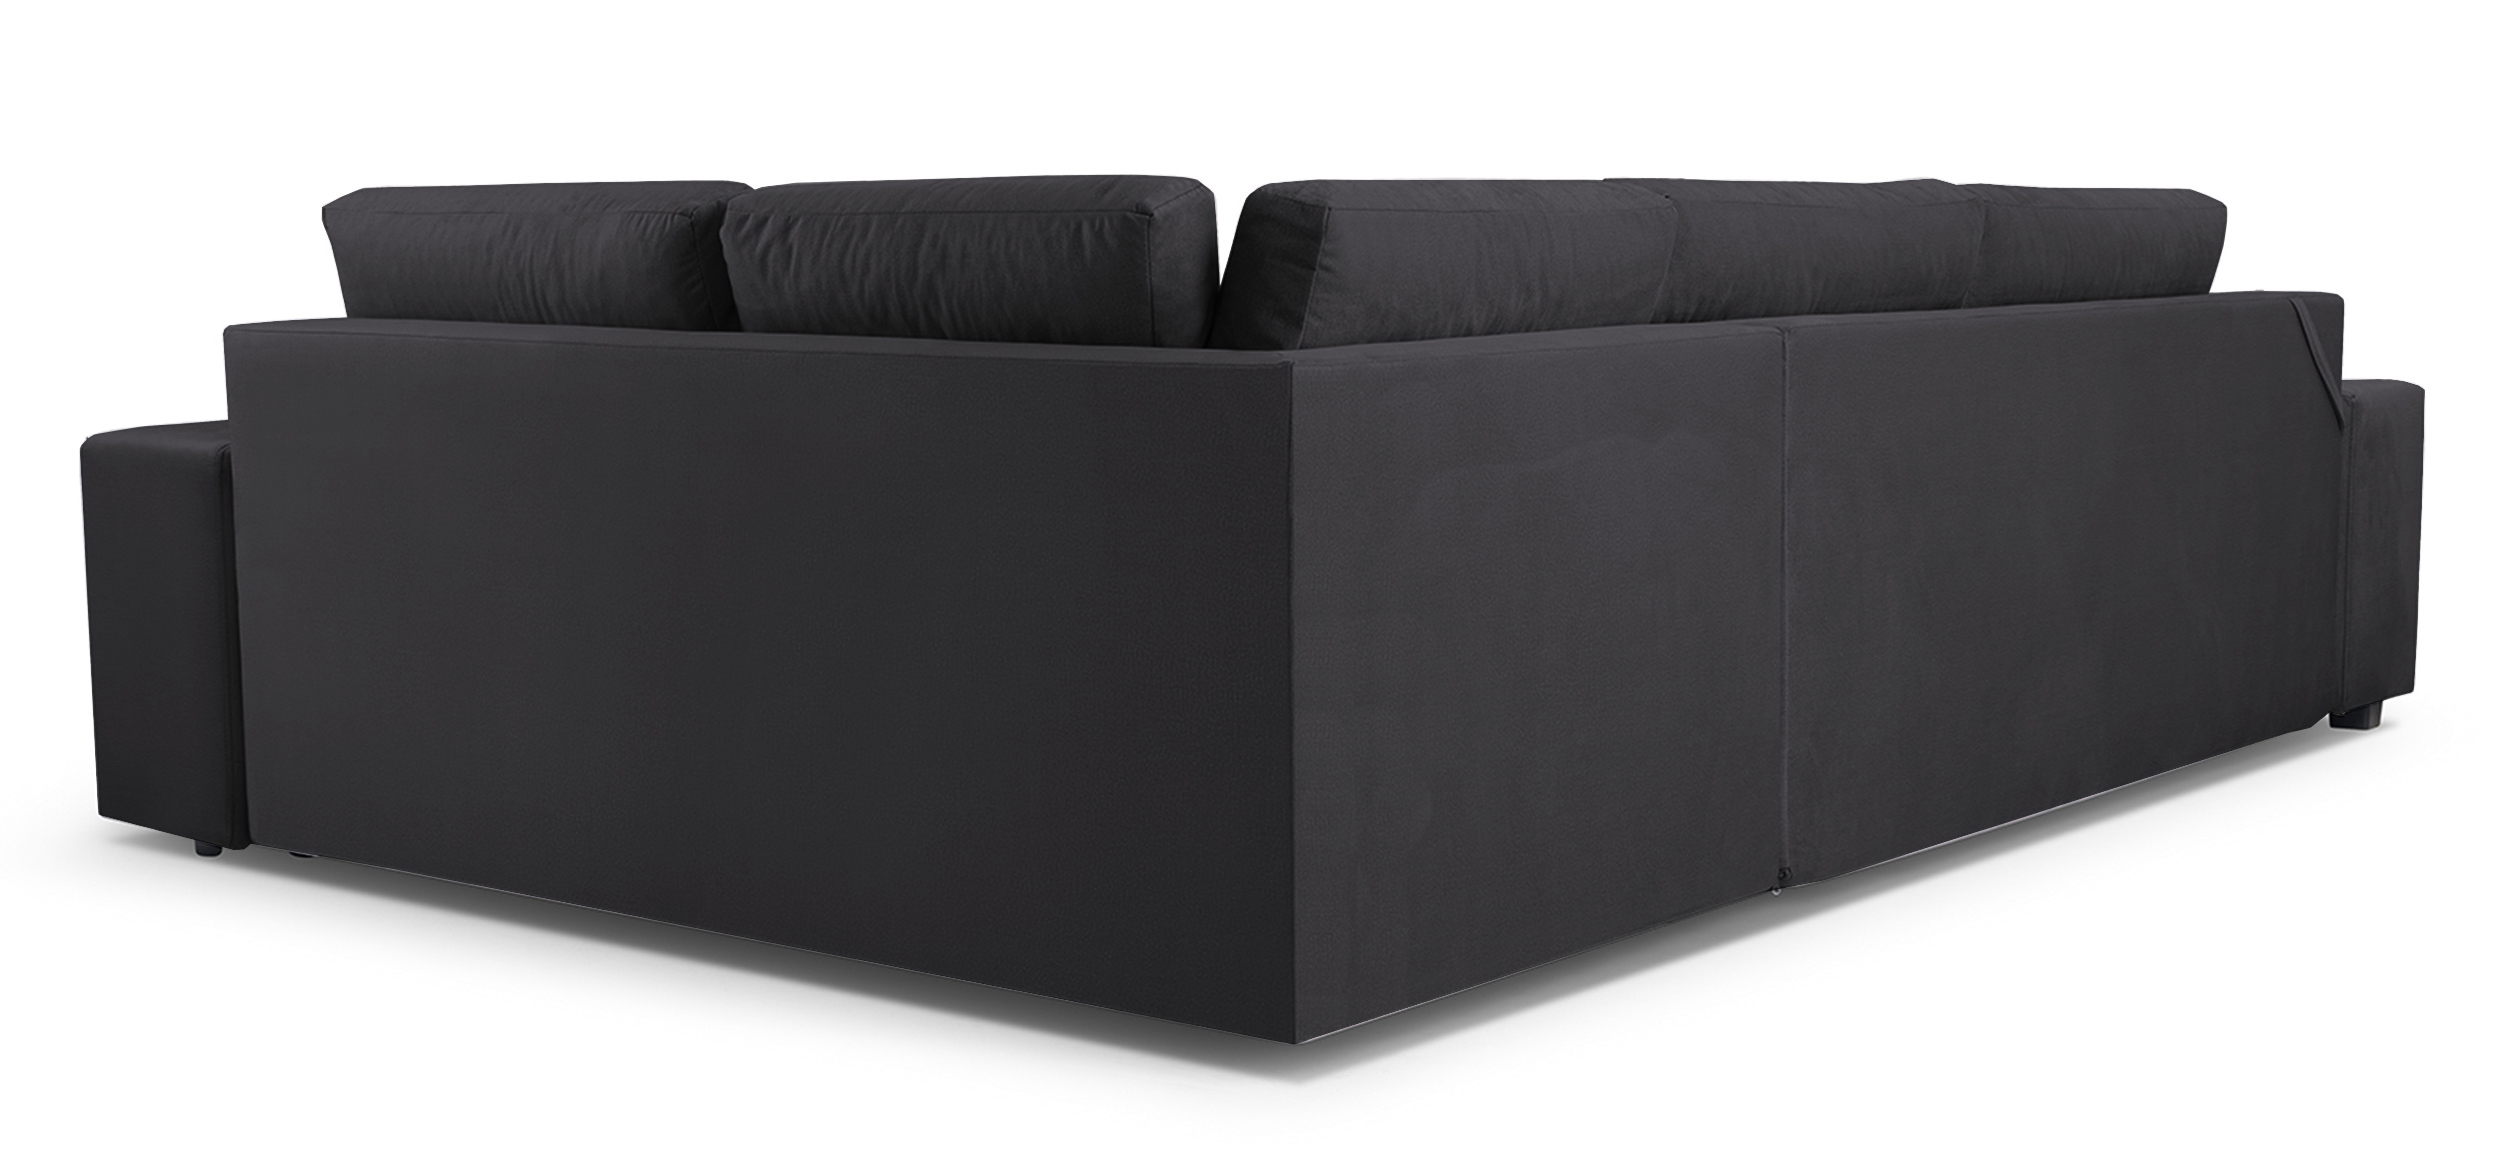 UMILL L Canapé d'angle droit fonction de lit avec minibar et pouf